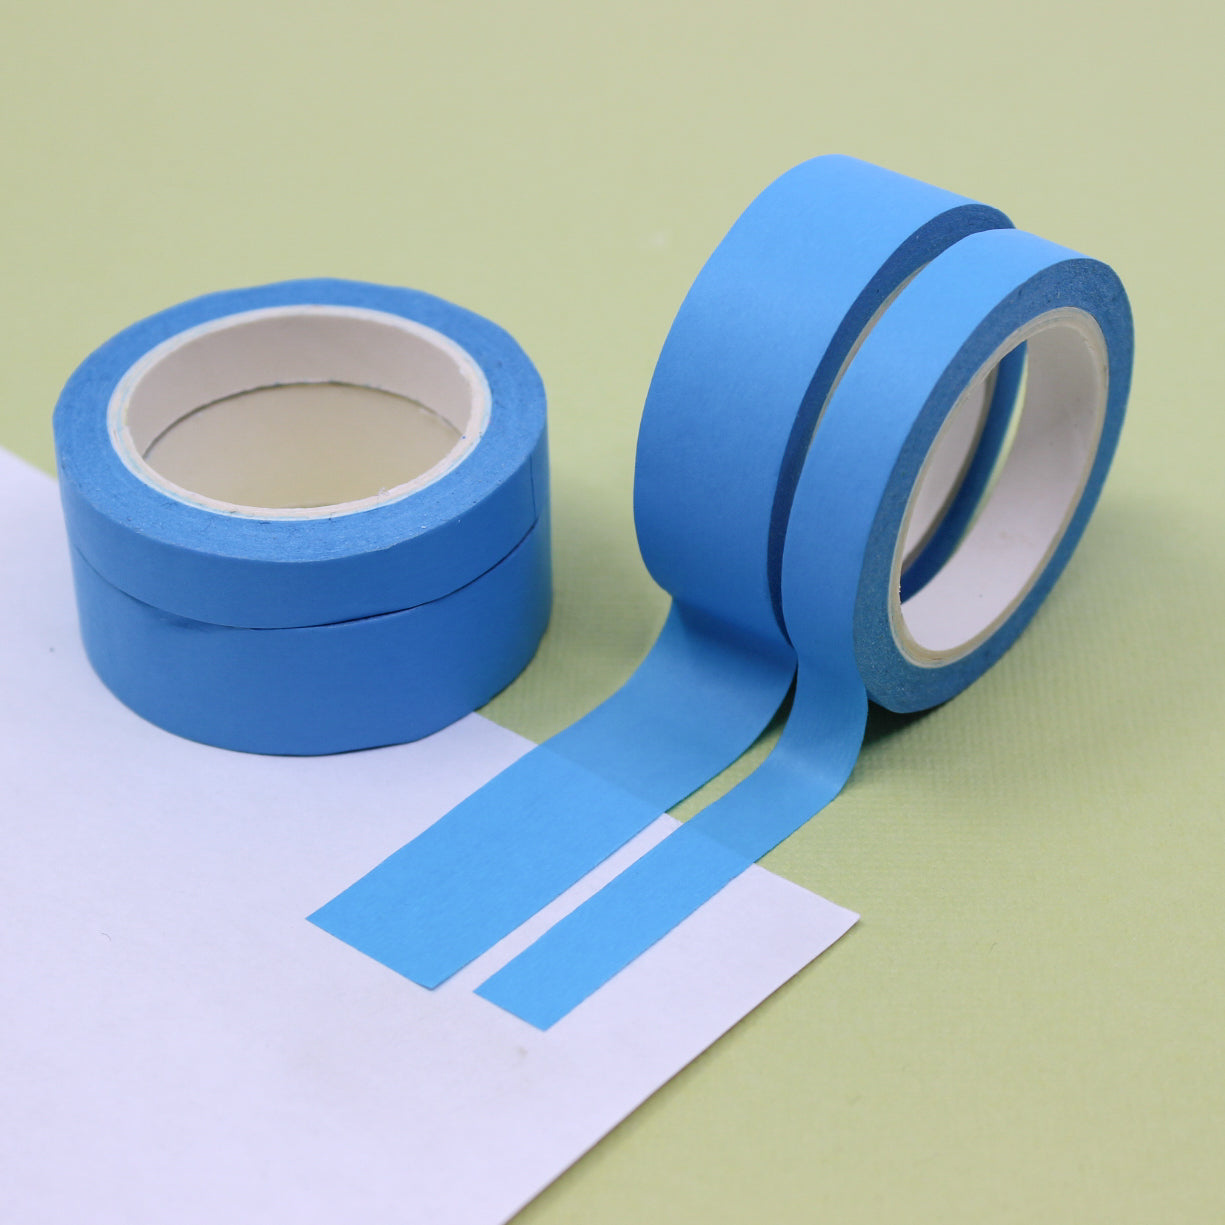 PRO Blue Painters Tape 1